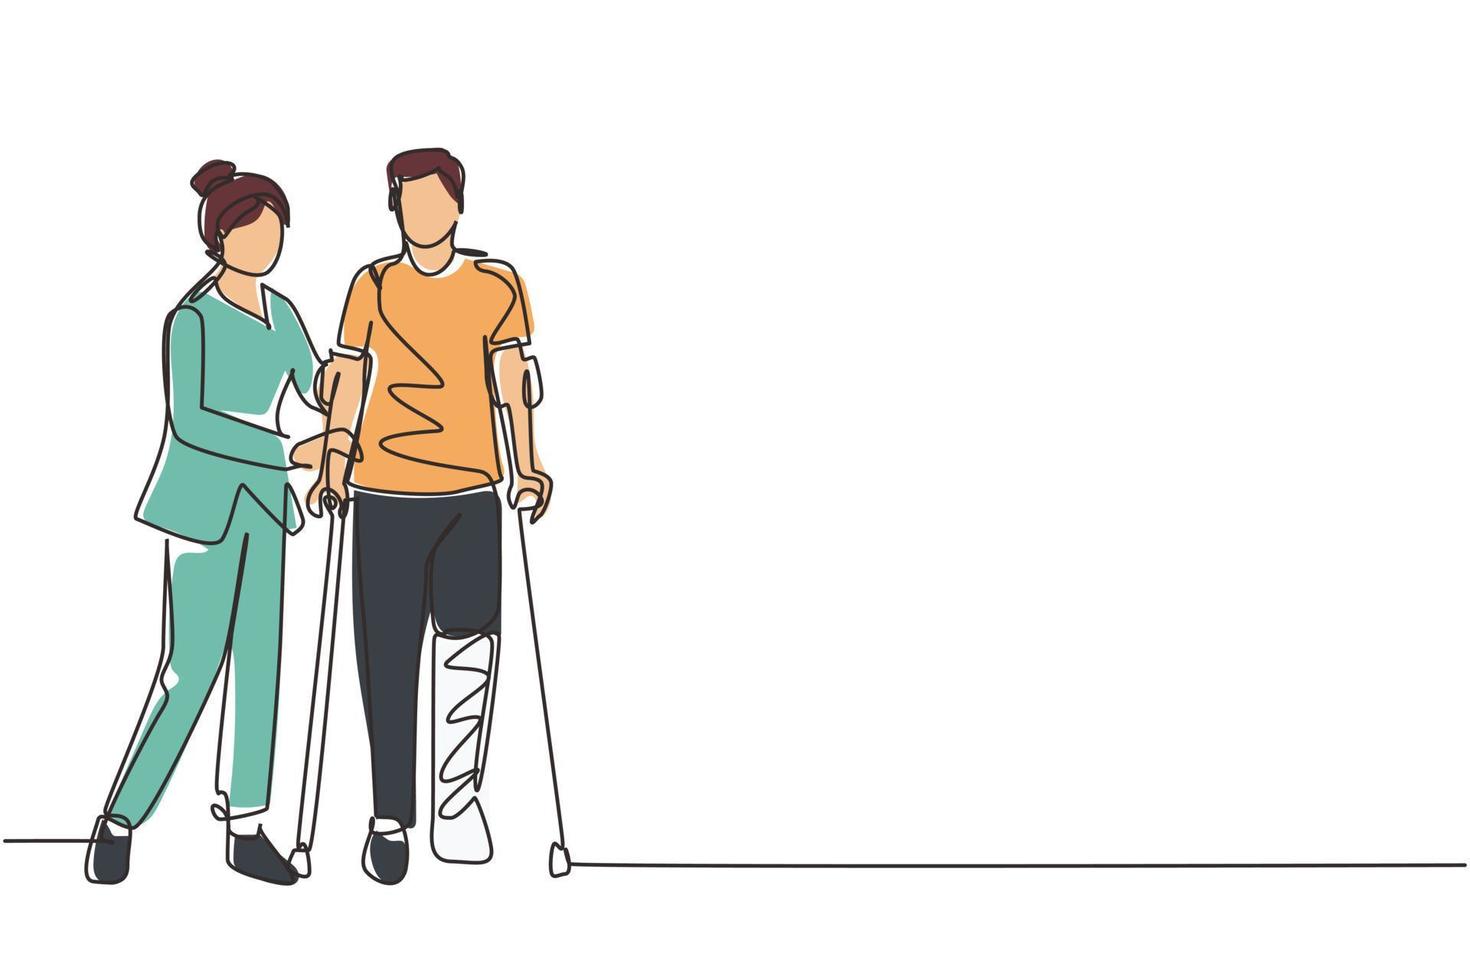 centro de rehabilitación de dibujo de una sola línea. paciente joven aprendiendo a caminar con muletas con ayuda del médico. tratamiento de fisioterapia de personas con lesiones. vector de diseño de dibujo de línea continua